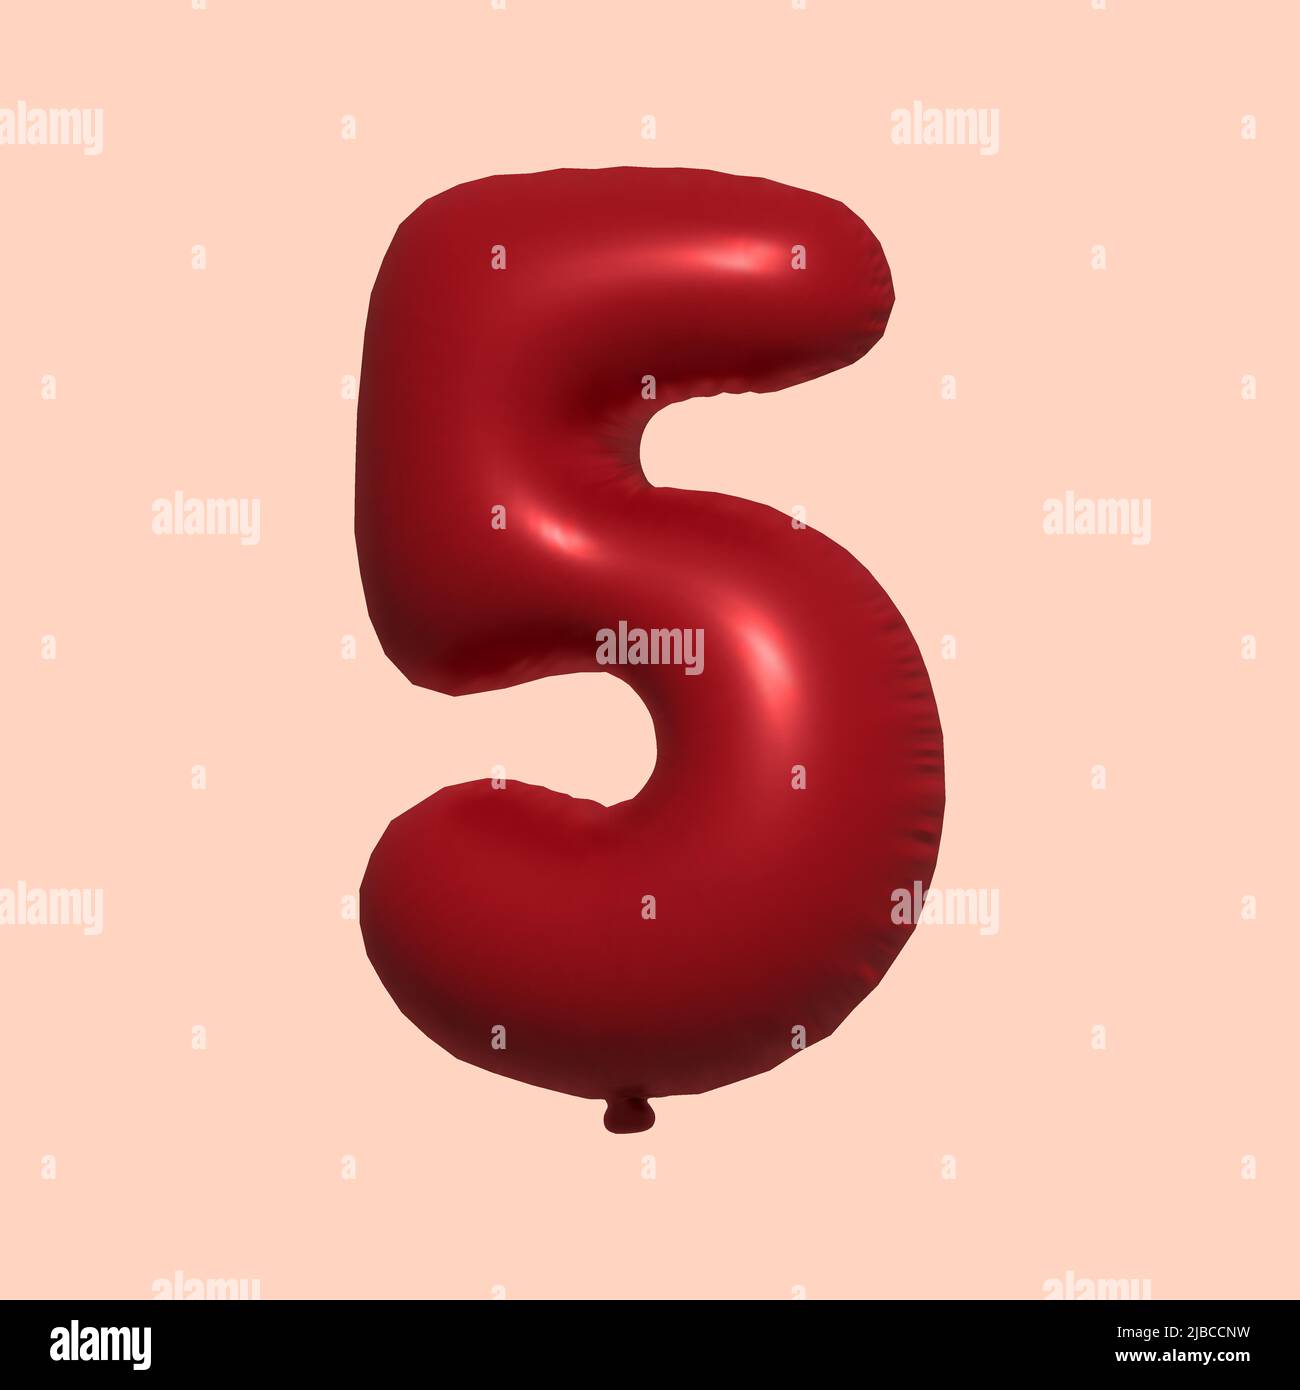 Immagini Stock - Palloncino Di Elio Foil Numero 5 Per La Celebrazione Del  Compleanno Con Regali. Rendering 3D. Image 123233879